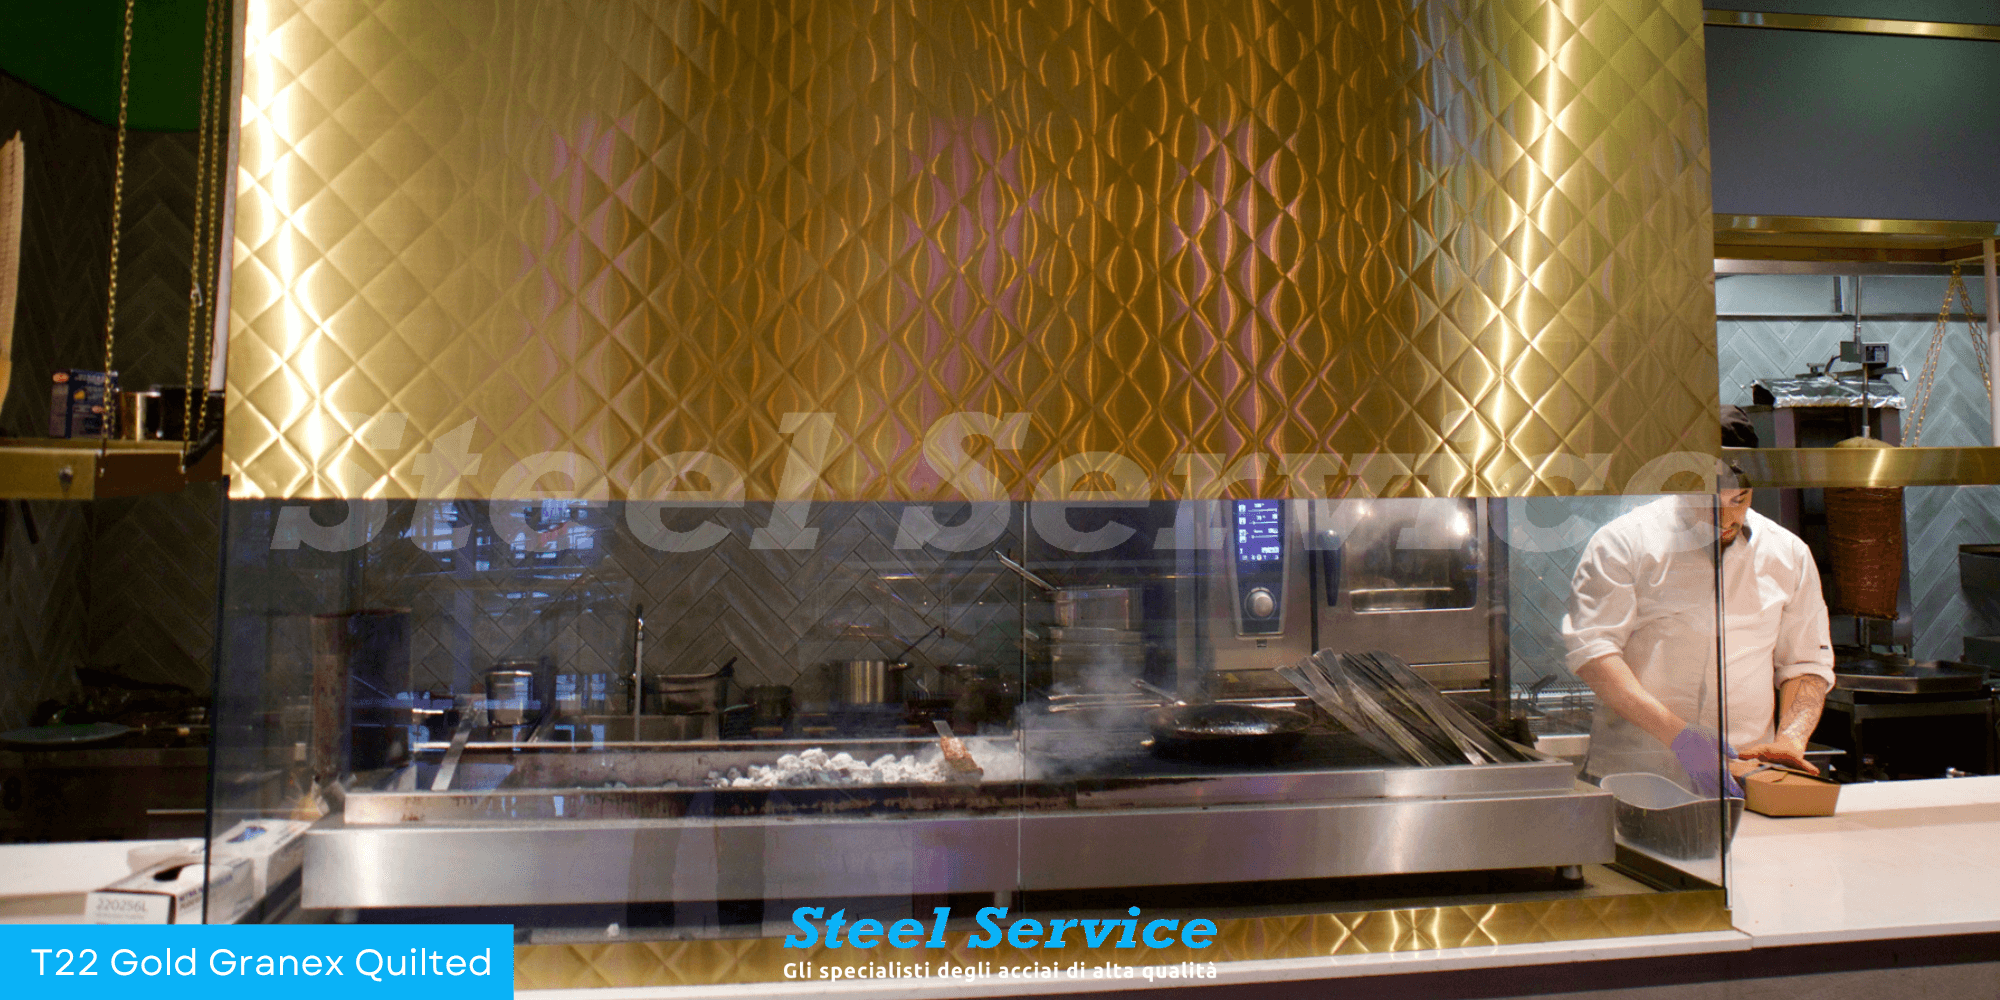 Cappa cucina ristorante inox t22 Gold Ganex Quilted, inox colorato micropallinato trapuntato